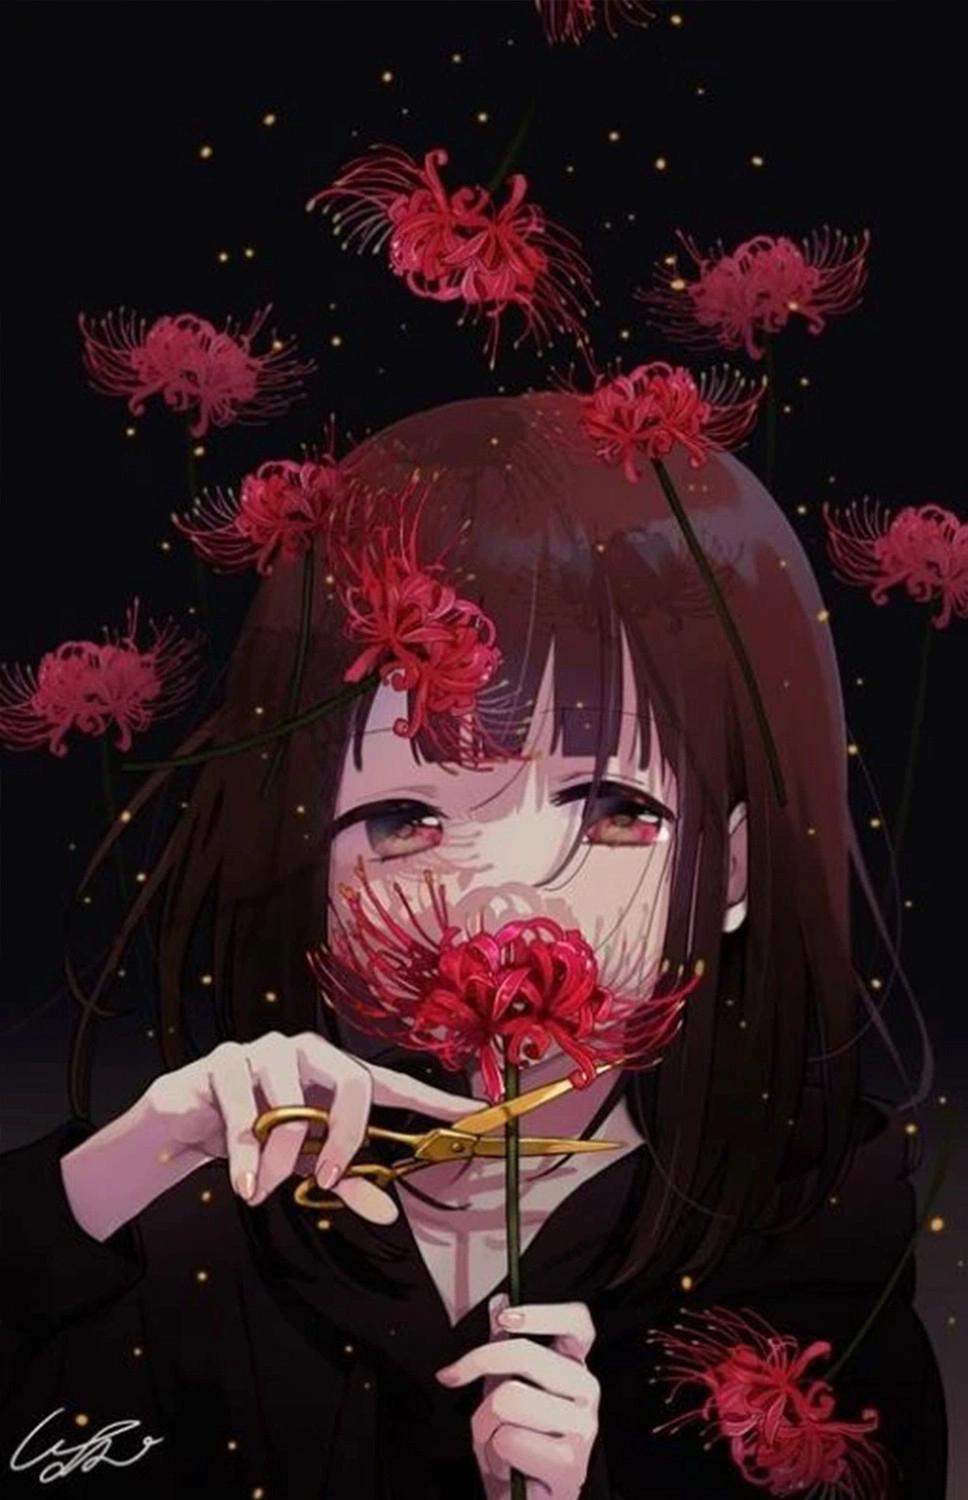  Hình ảnh nền Smartphone hoa bỉ ngạn đỏ lòe phim hoạt hình anime quái mị